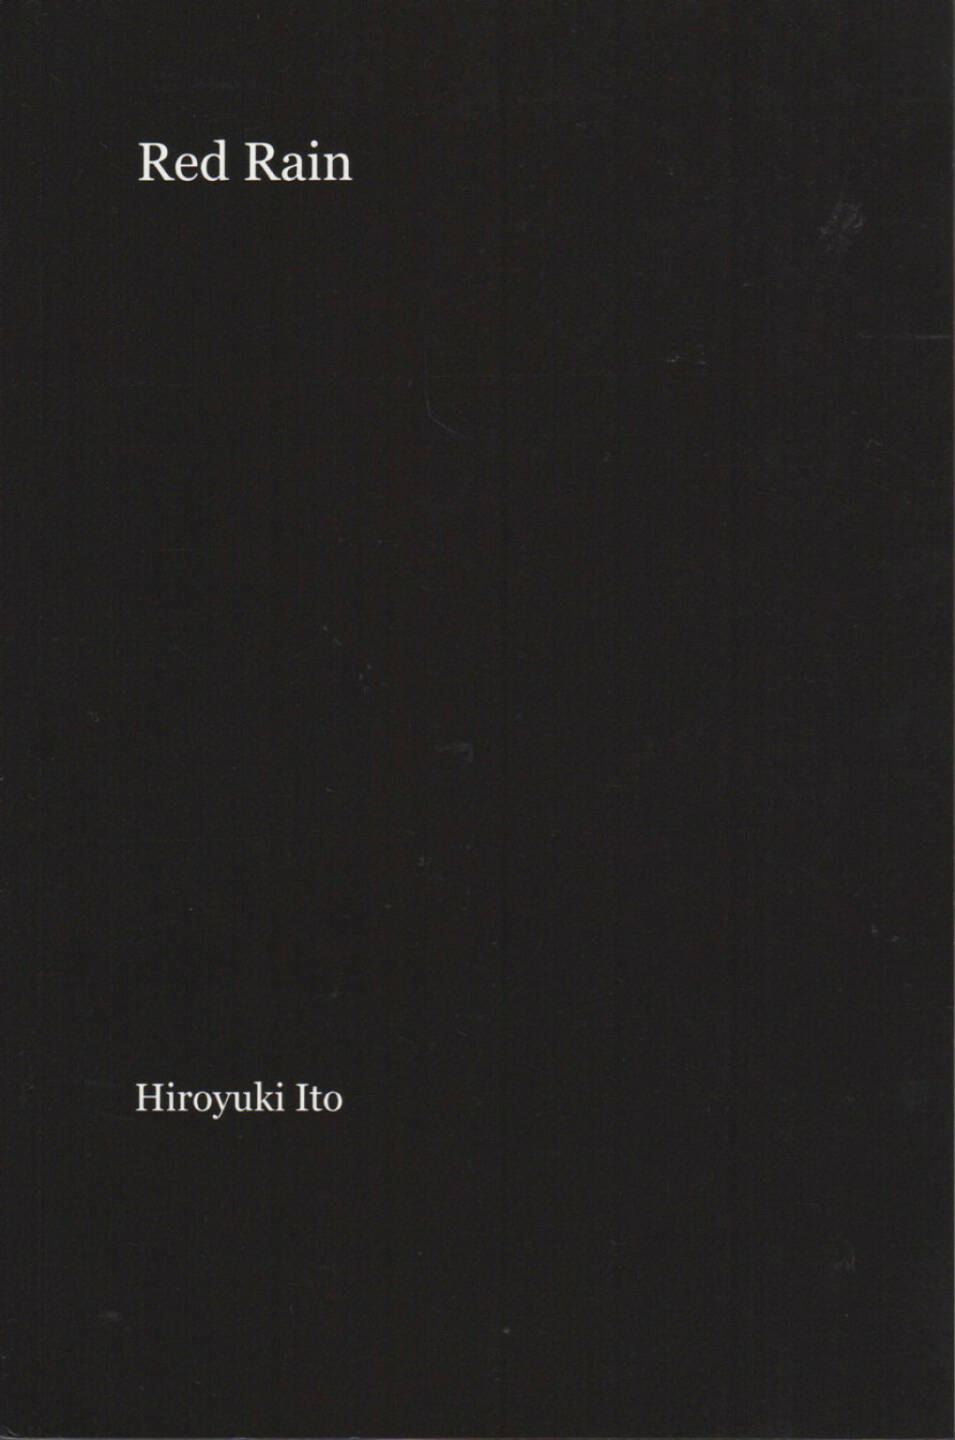 Hiroyuki Ito - Red Rain, Blurb, 2012, Cover - http://josefchladek.com/book/hiroyuki_ito_-_red_rain